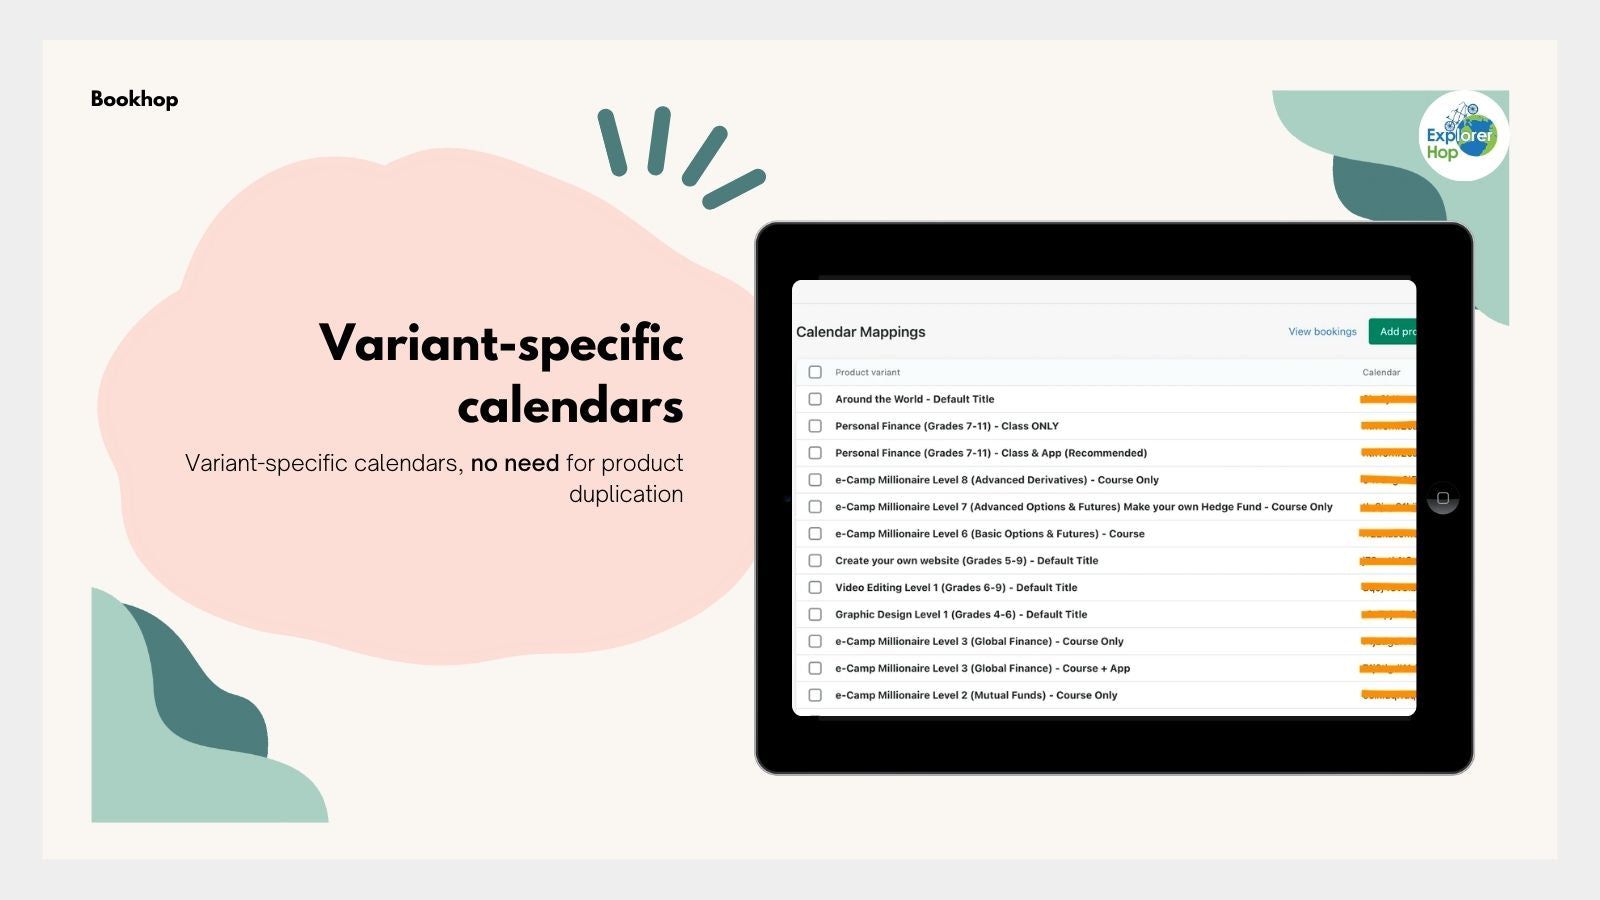 Variant-specific calendars